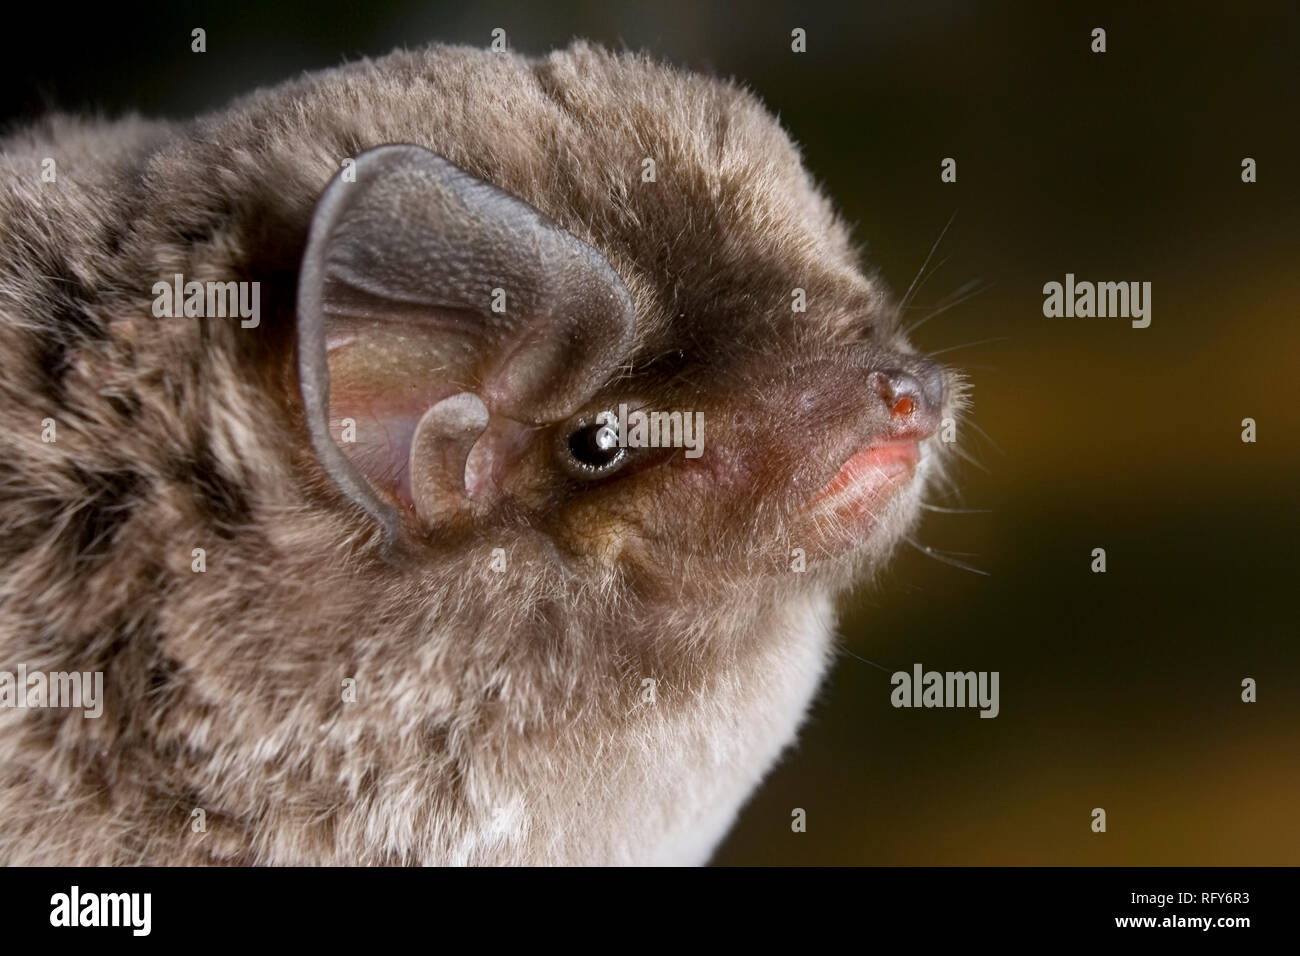 Longue de l'Afrique bat fingered (Miniopterus africanus) portrait, région côtière du Kenya. Banque D'Images